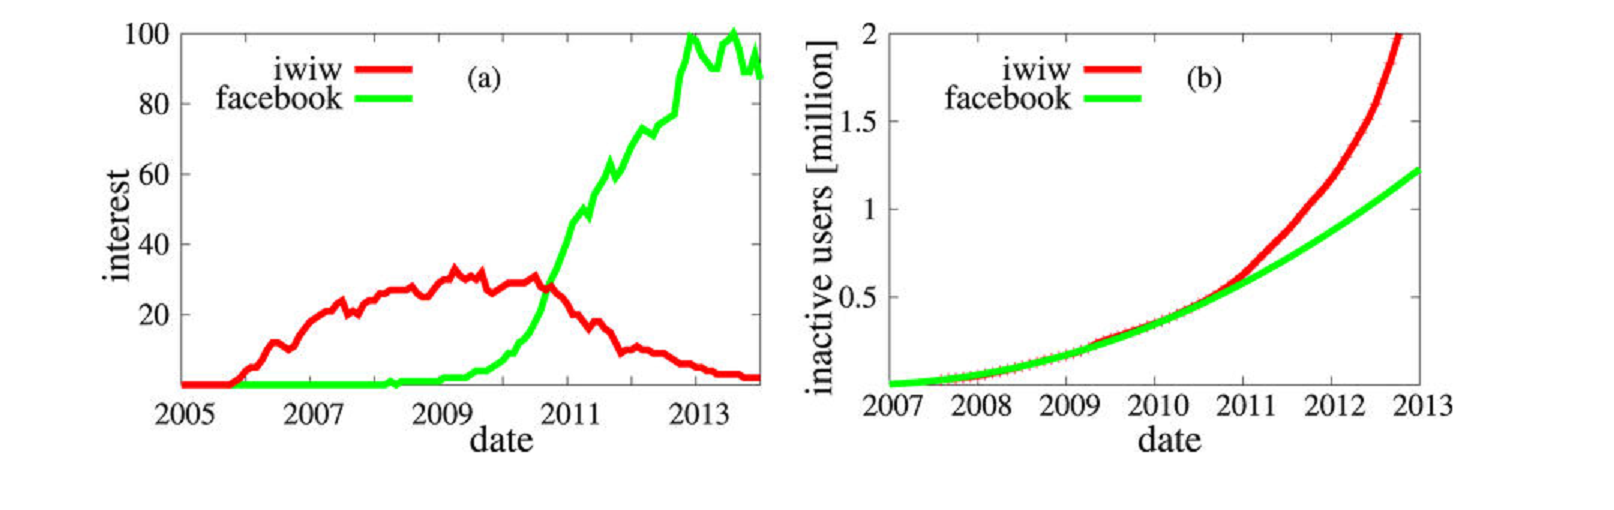 Közösségi oldalak piaci részesedése, illetve inaktív felhasználóik száma